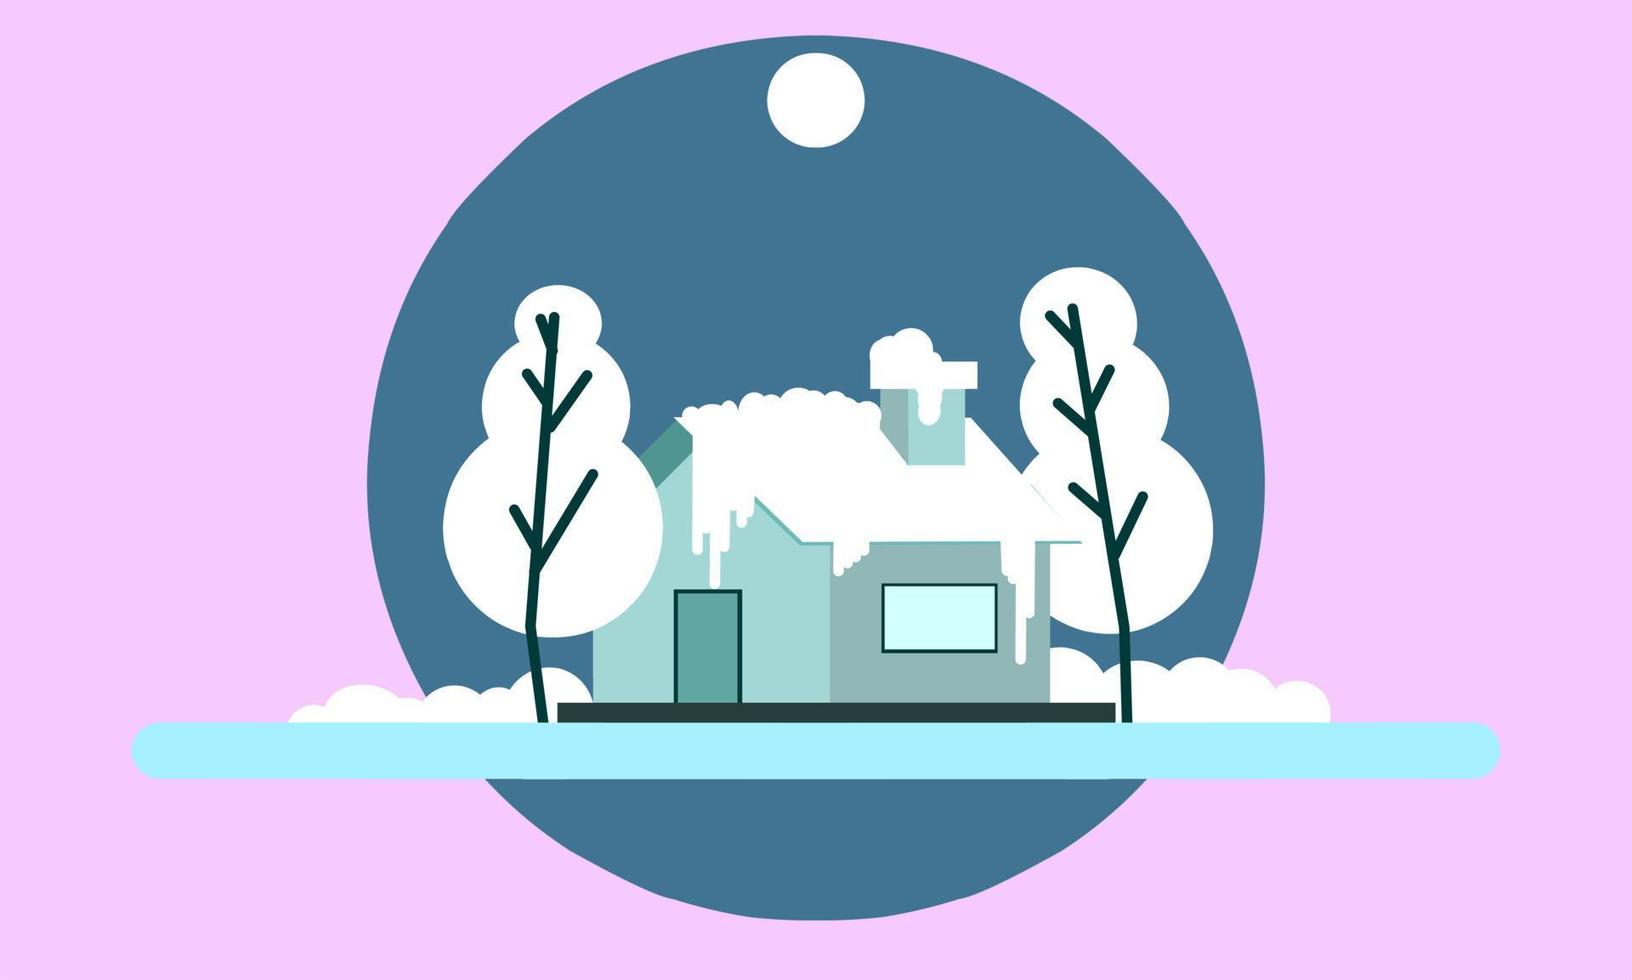 Winter illustration design, simple landscape illustration with elegance concept vector